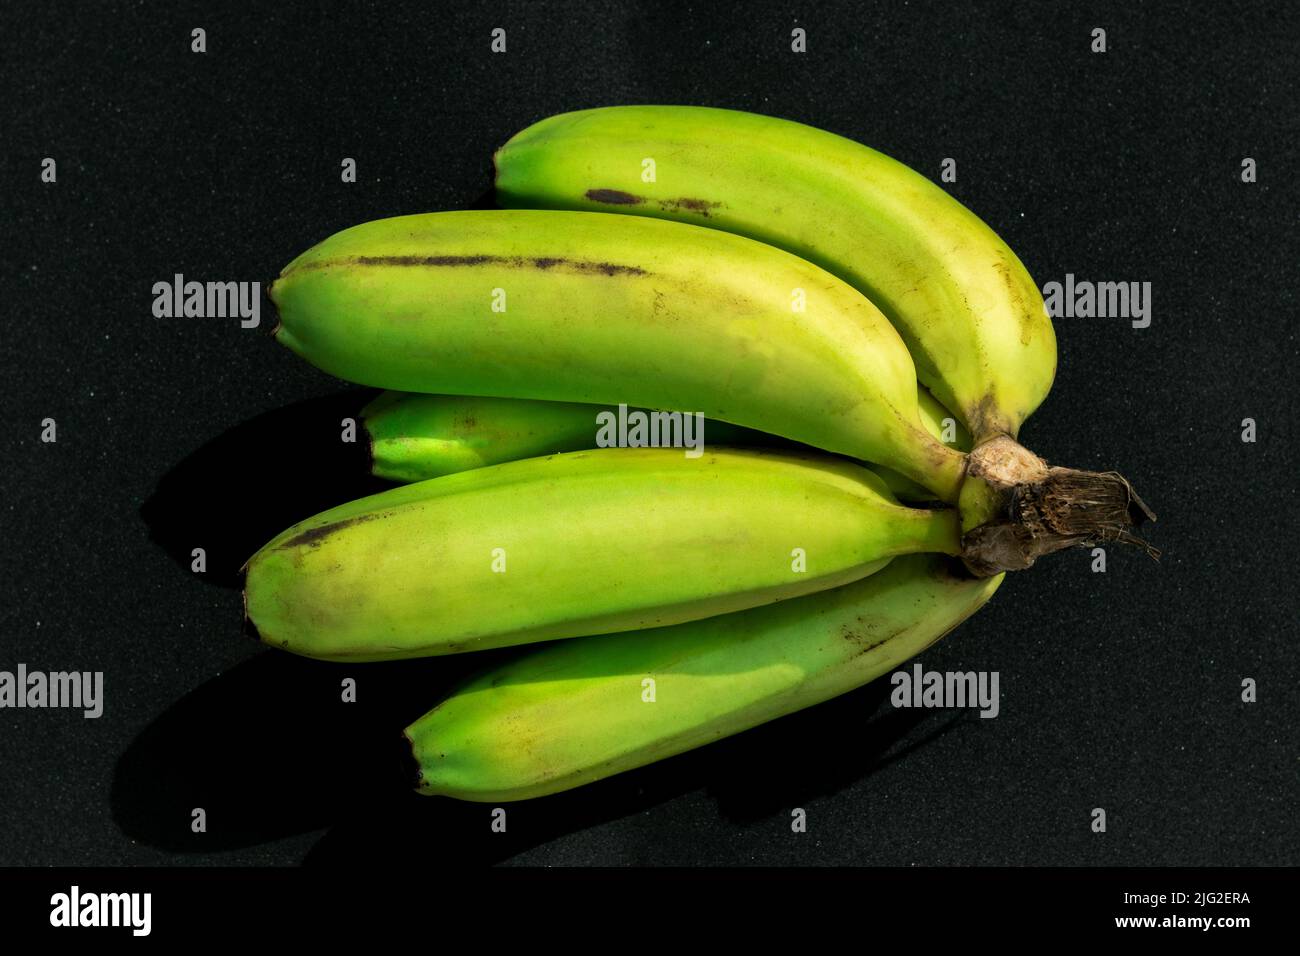 Paquete de plátanos verdes frescos aislados sobre fondo negro. Enfoque selectivo en la capa superior con desenfoque de fondo. Foto de stock